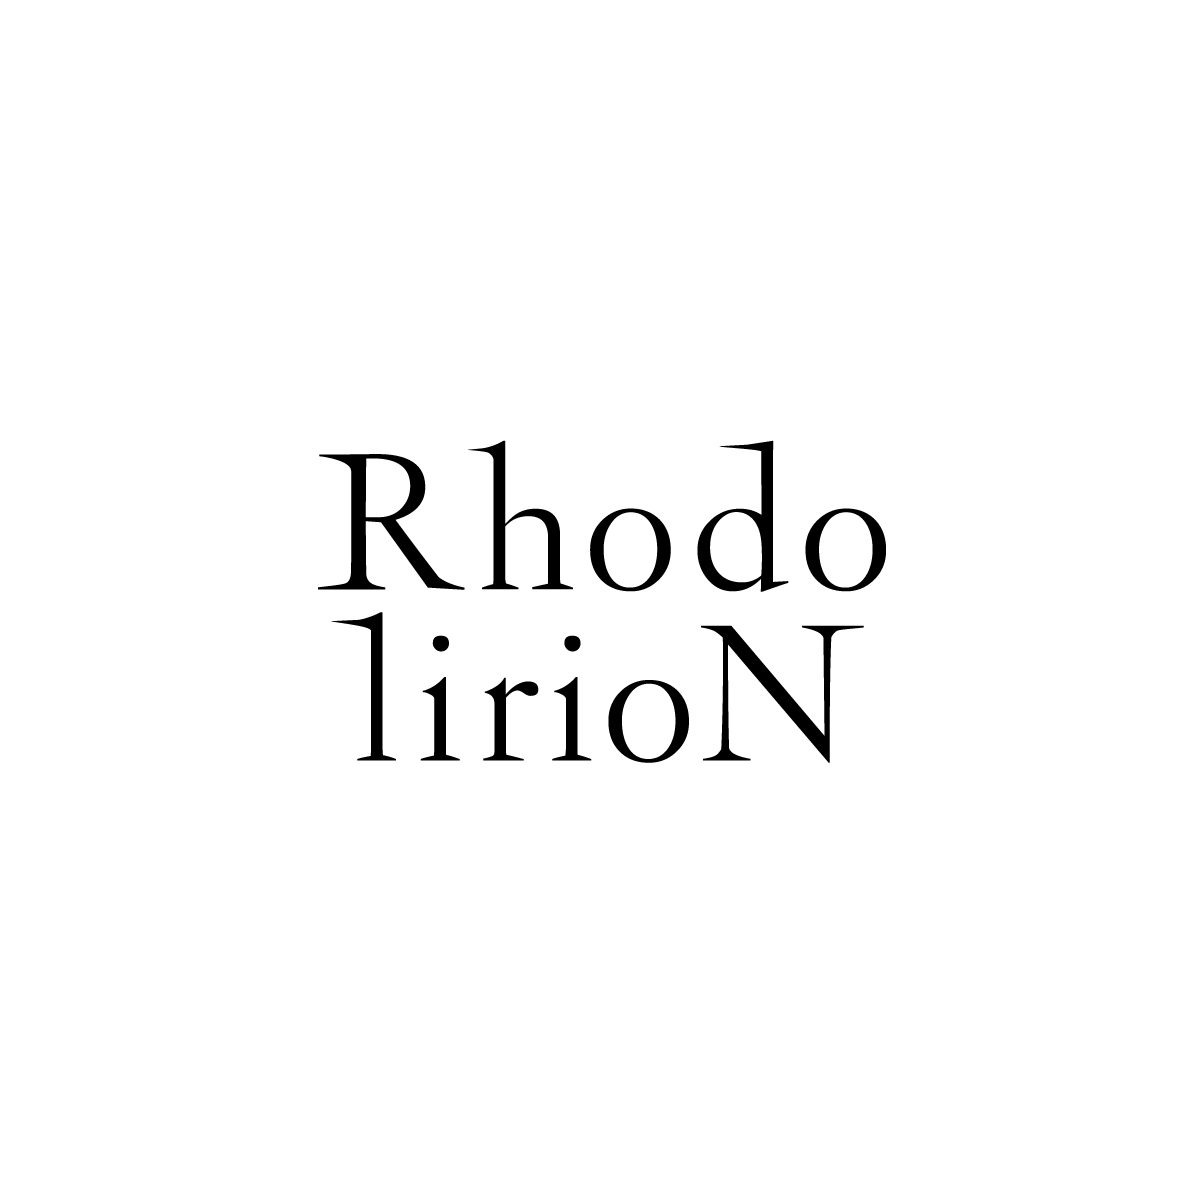 ロドリリオン(RHODOLIRION)